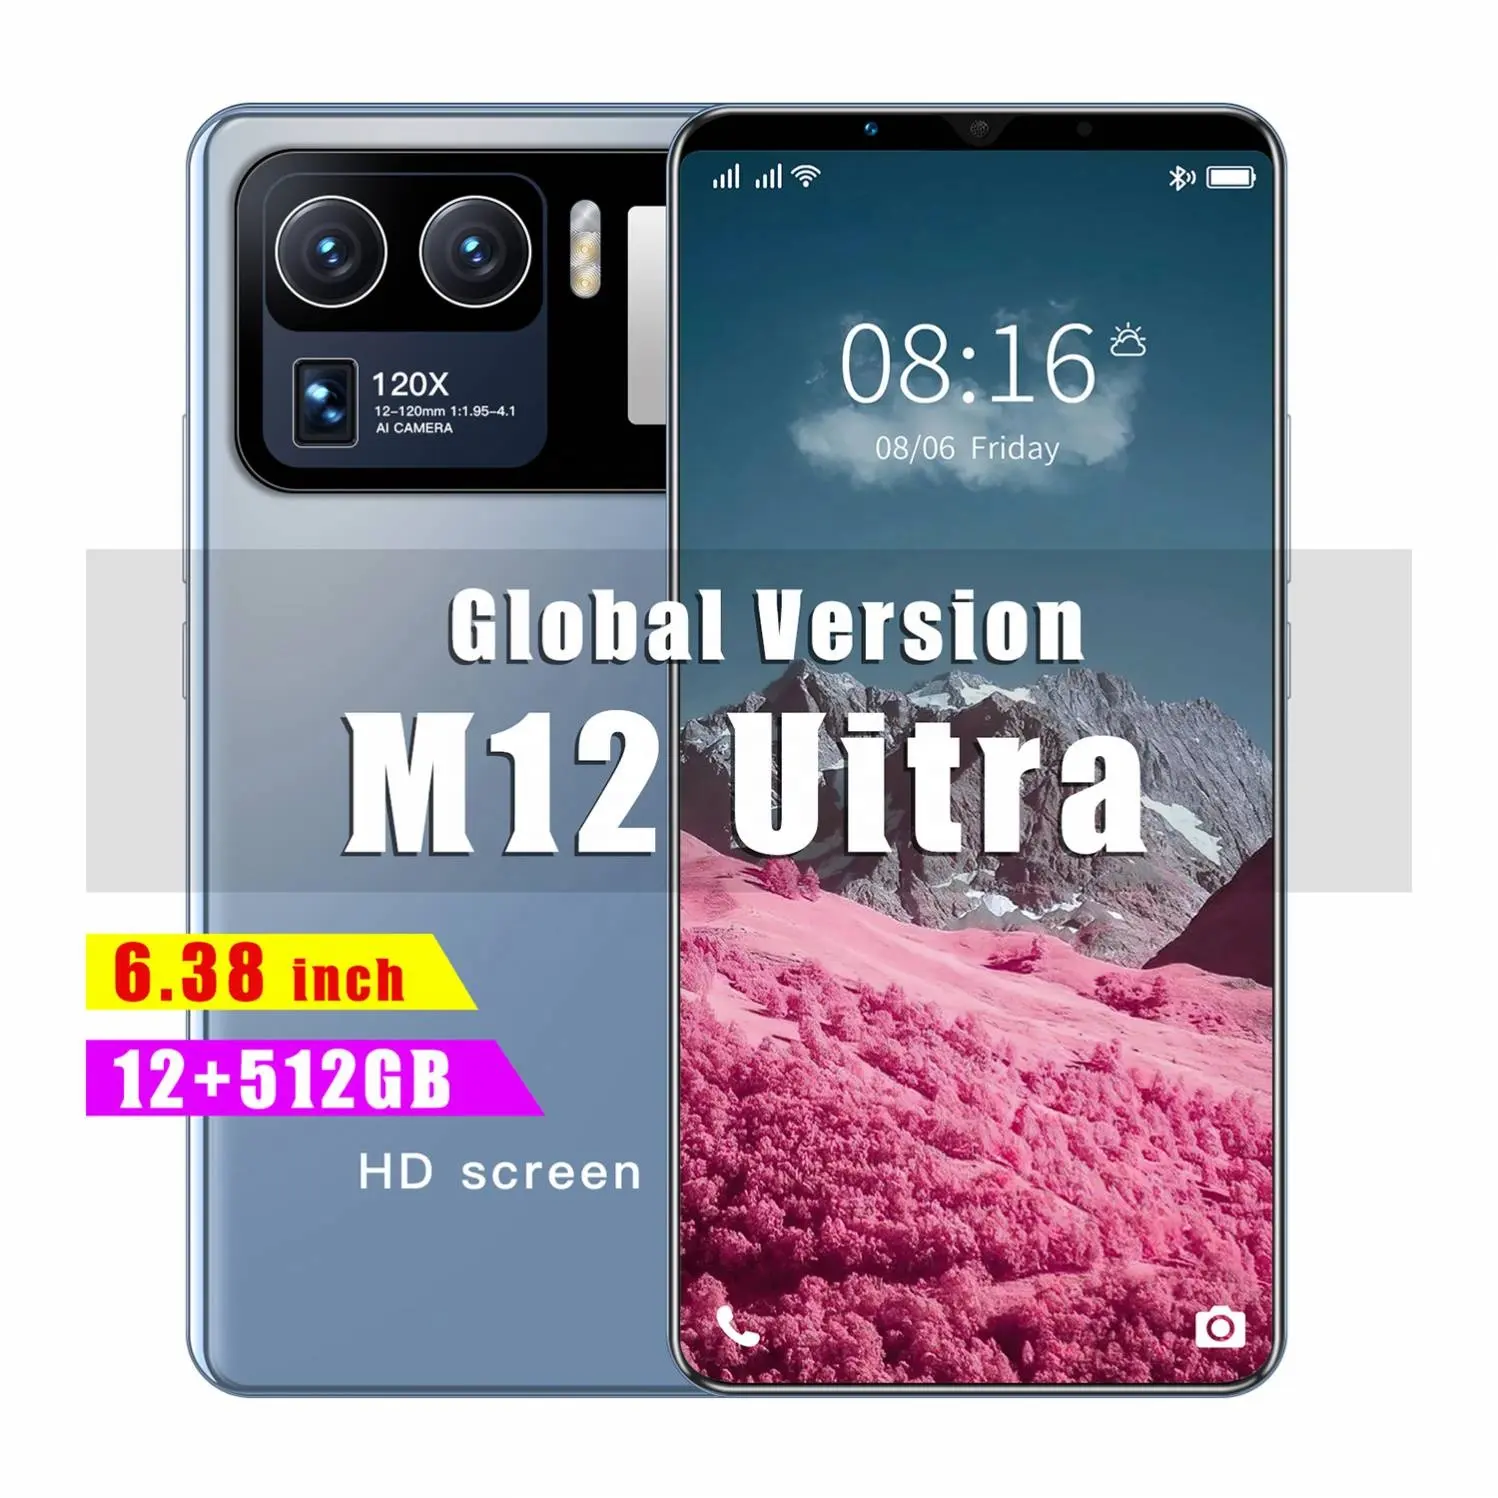 Smartphone M12 U1tra 6.38 Polegadas 5g vivo, smartphone de alta qualidade, smartphone chinês, preço